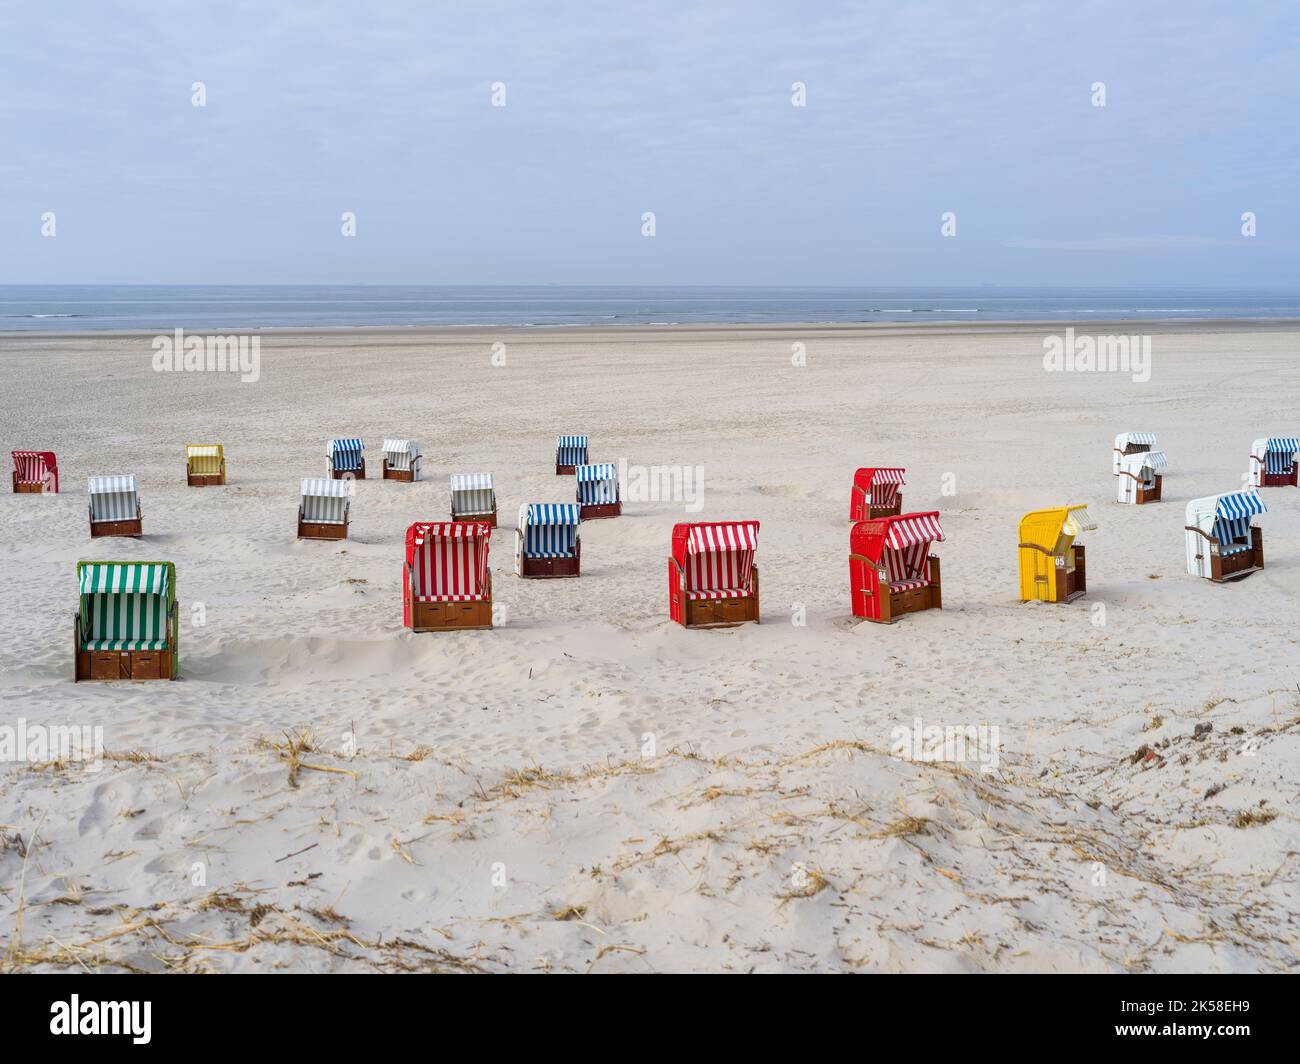 Strandkörbe in der Dünenlandschaft auf der Insel Juist, Nordsee, Niedersachsen, Deutschland Stock Photo